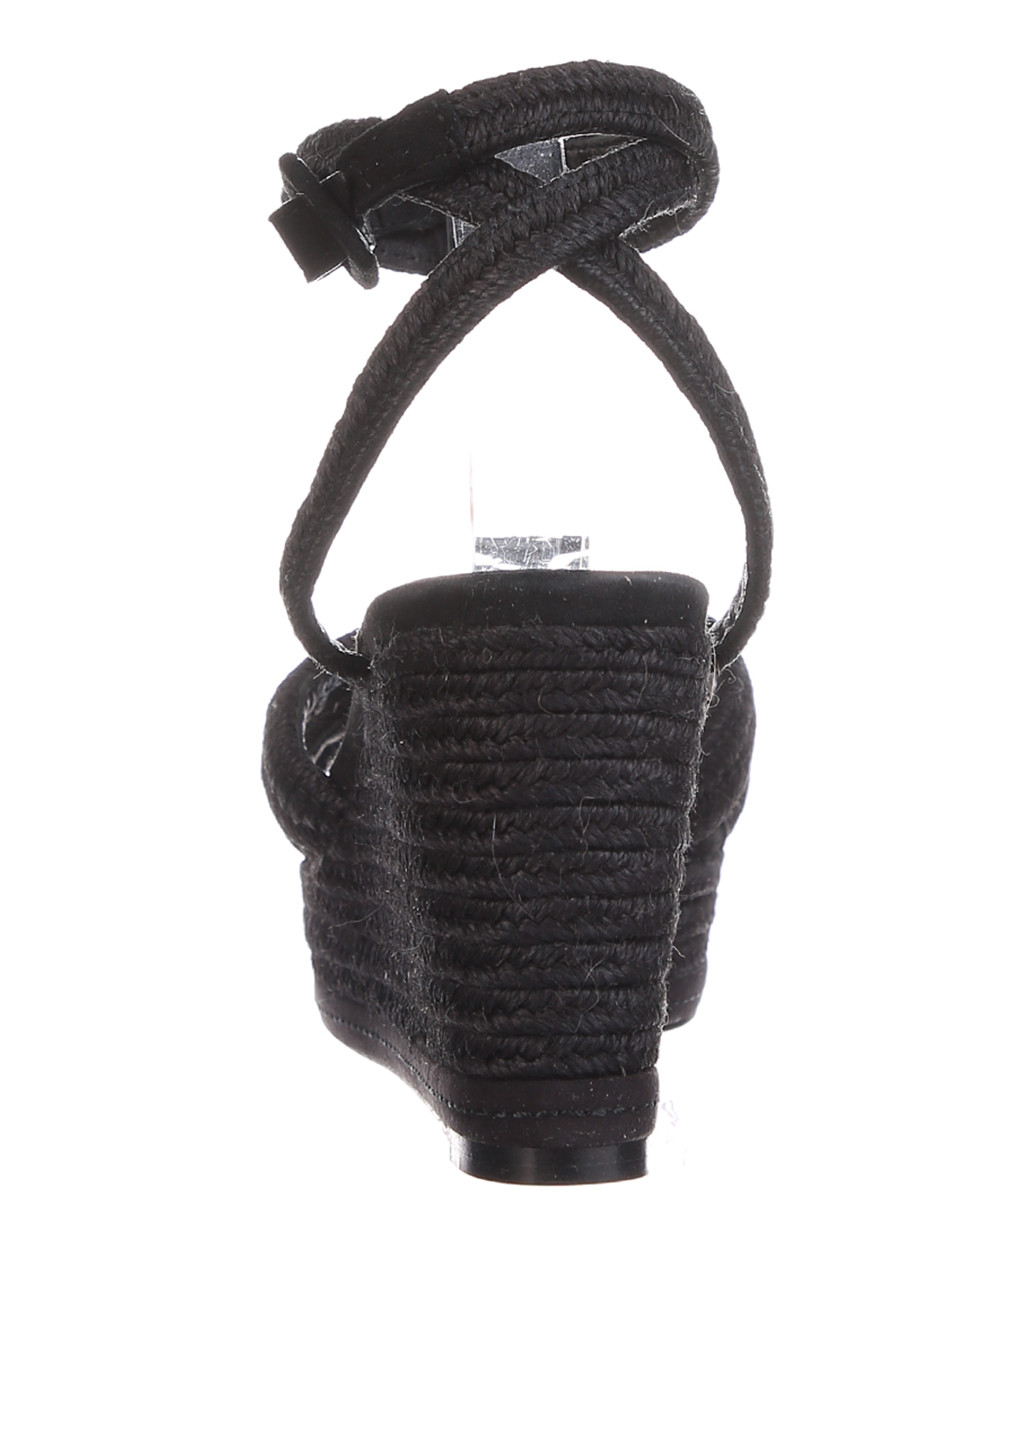 Черные босоножки Massimo Dutti с ремешком на плетеной подошве